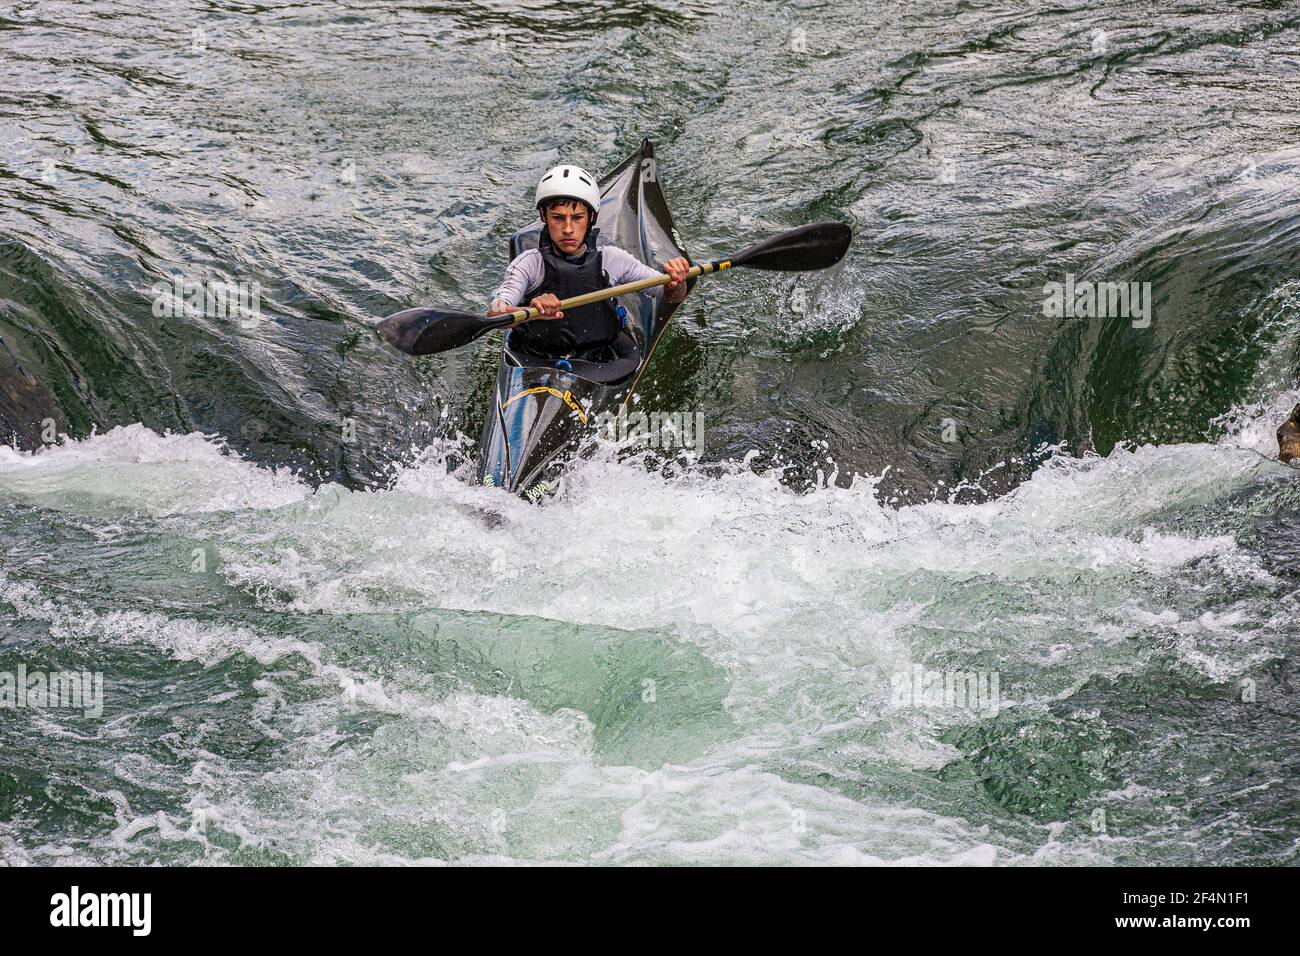 Italy Veneto Valbrenta - Valstagna / Kayak in  Brenta Valley on Brenta River Stock Photo